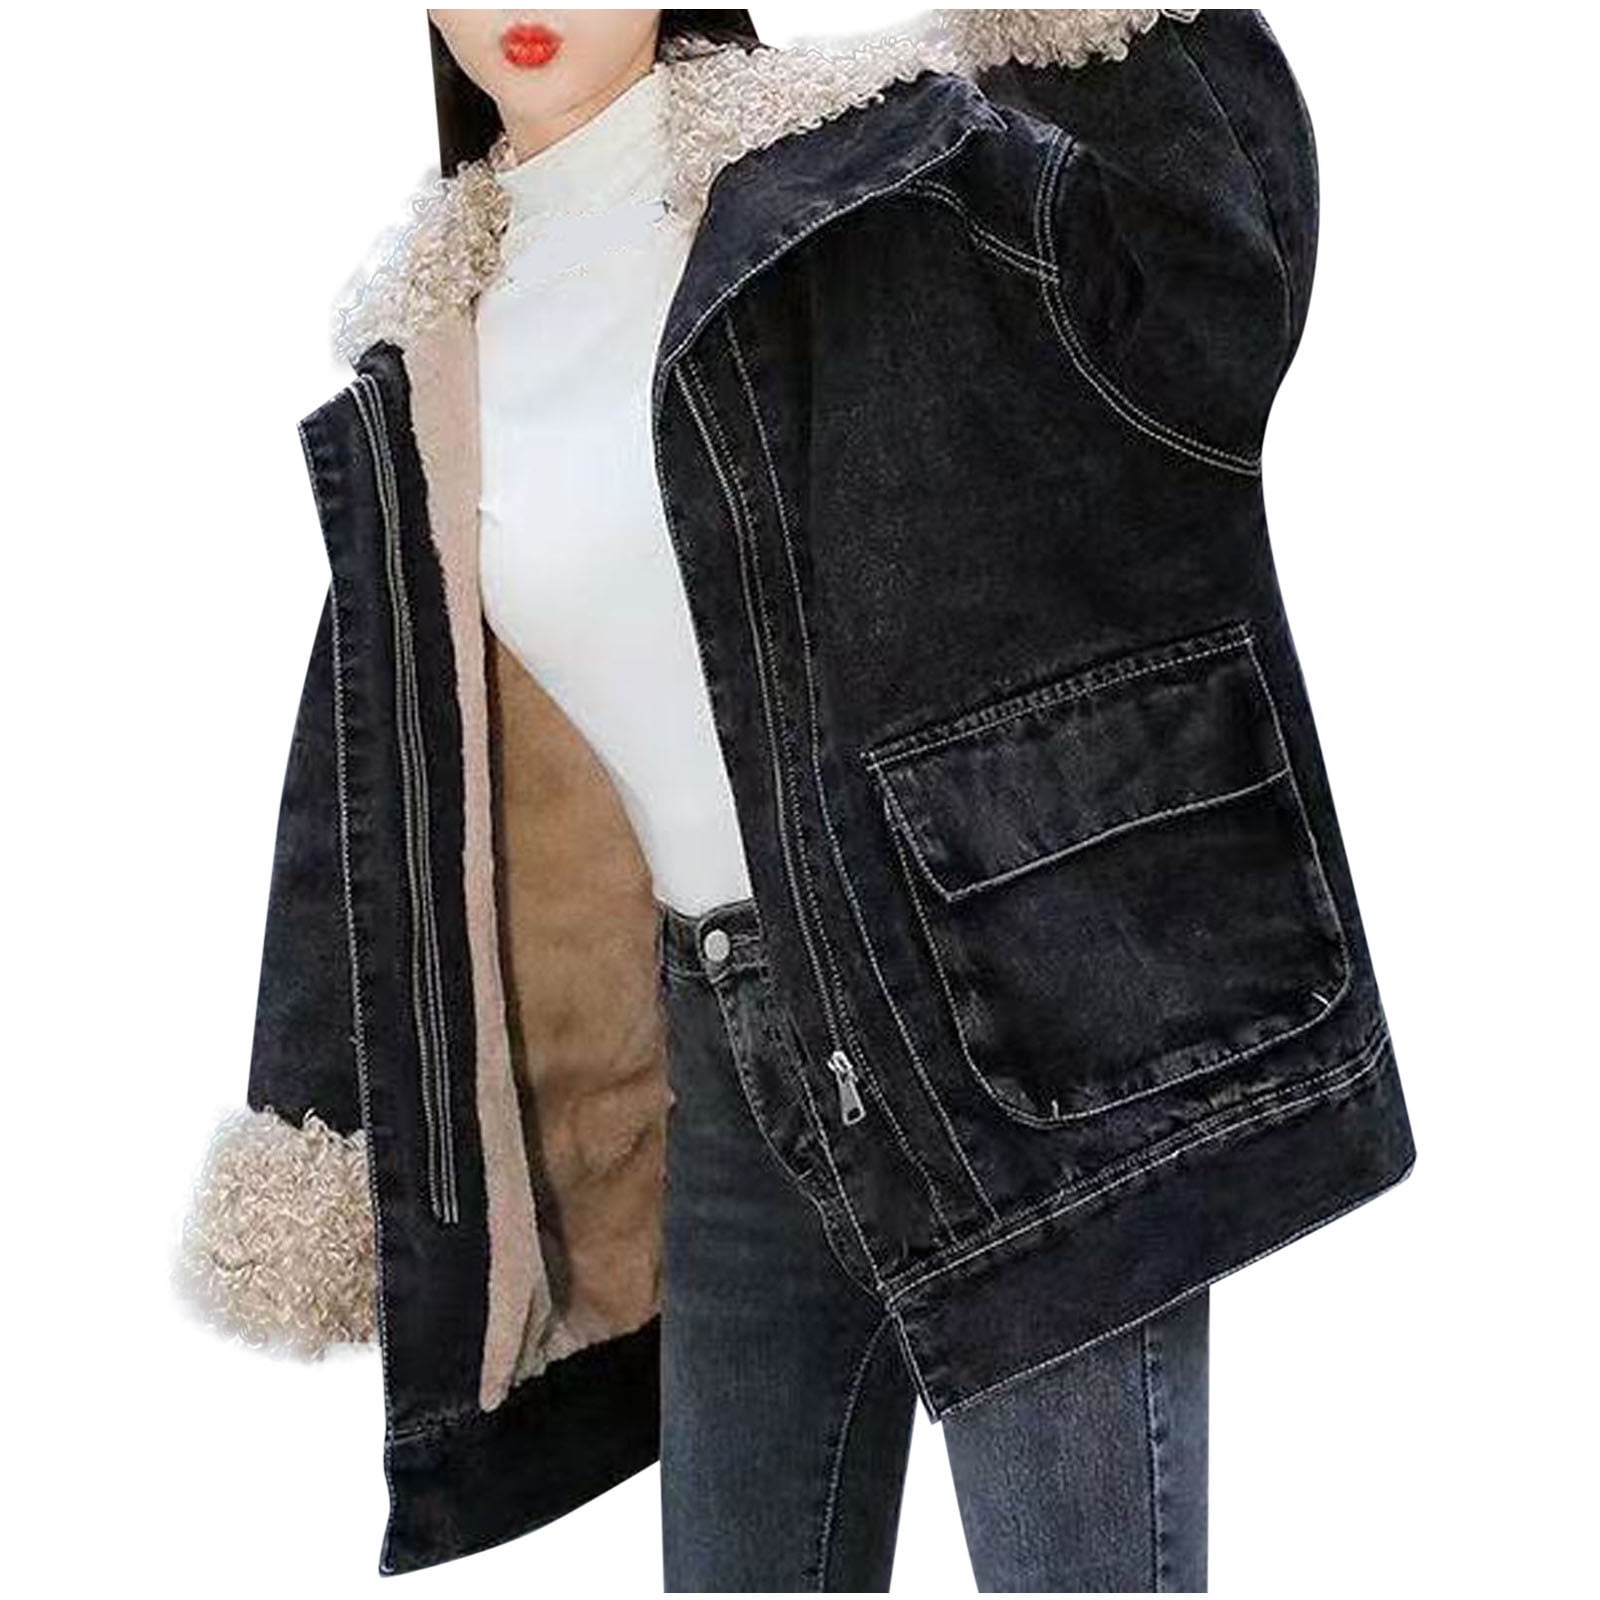 Women Fleece Lined Denim Jacket with Hood Winter Warm Jean Coats Oversized  Cardigan Long Sleeve Trucker Jacket Outwear at Amazon Women's Coats Shop